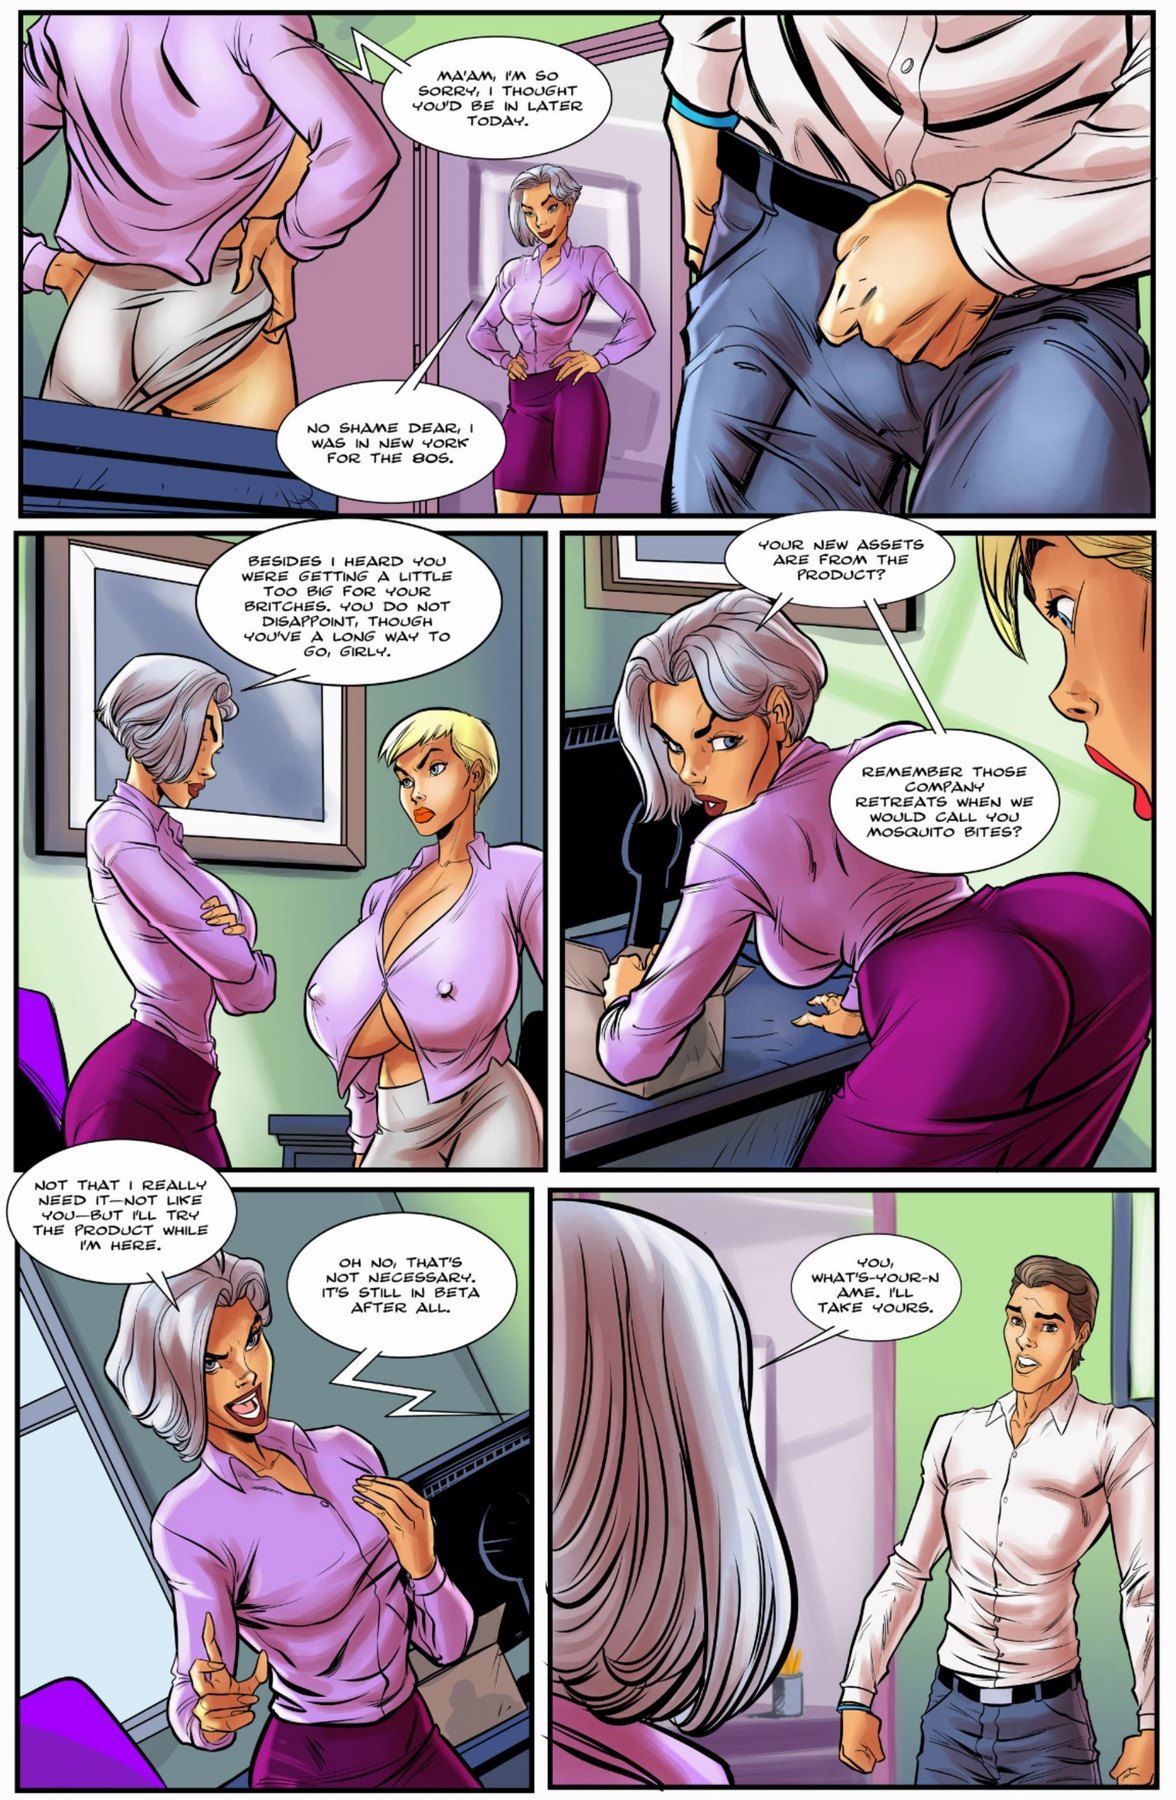 Boss Bitch Issue 03 by BotComics page 5